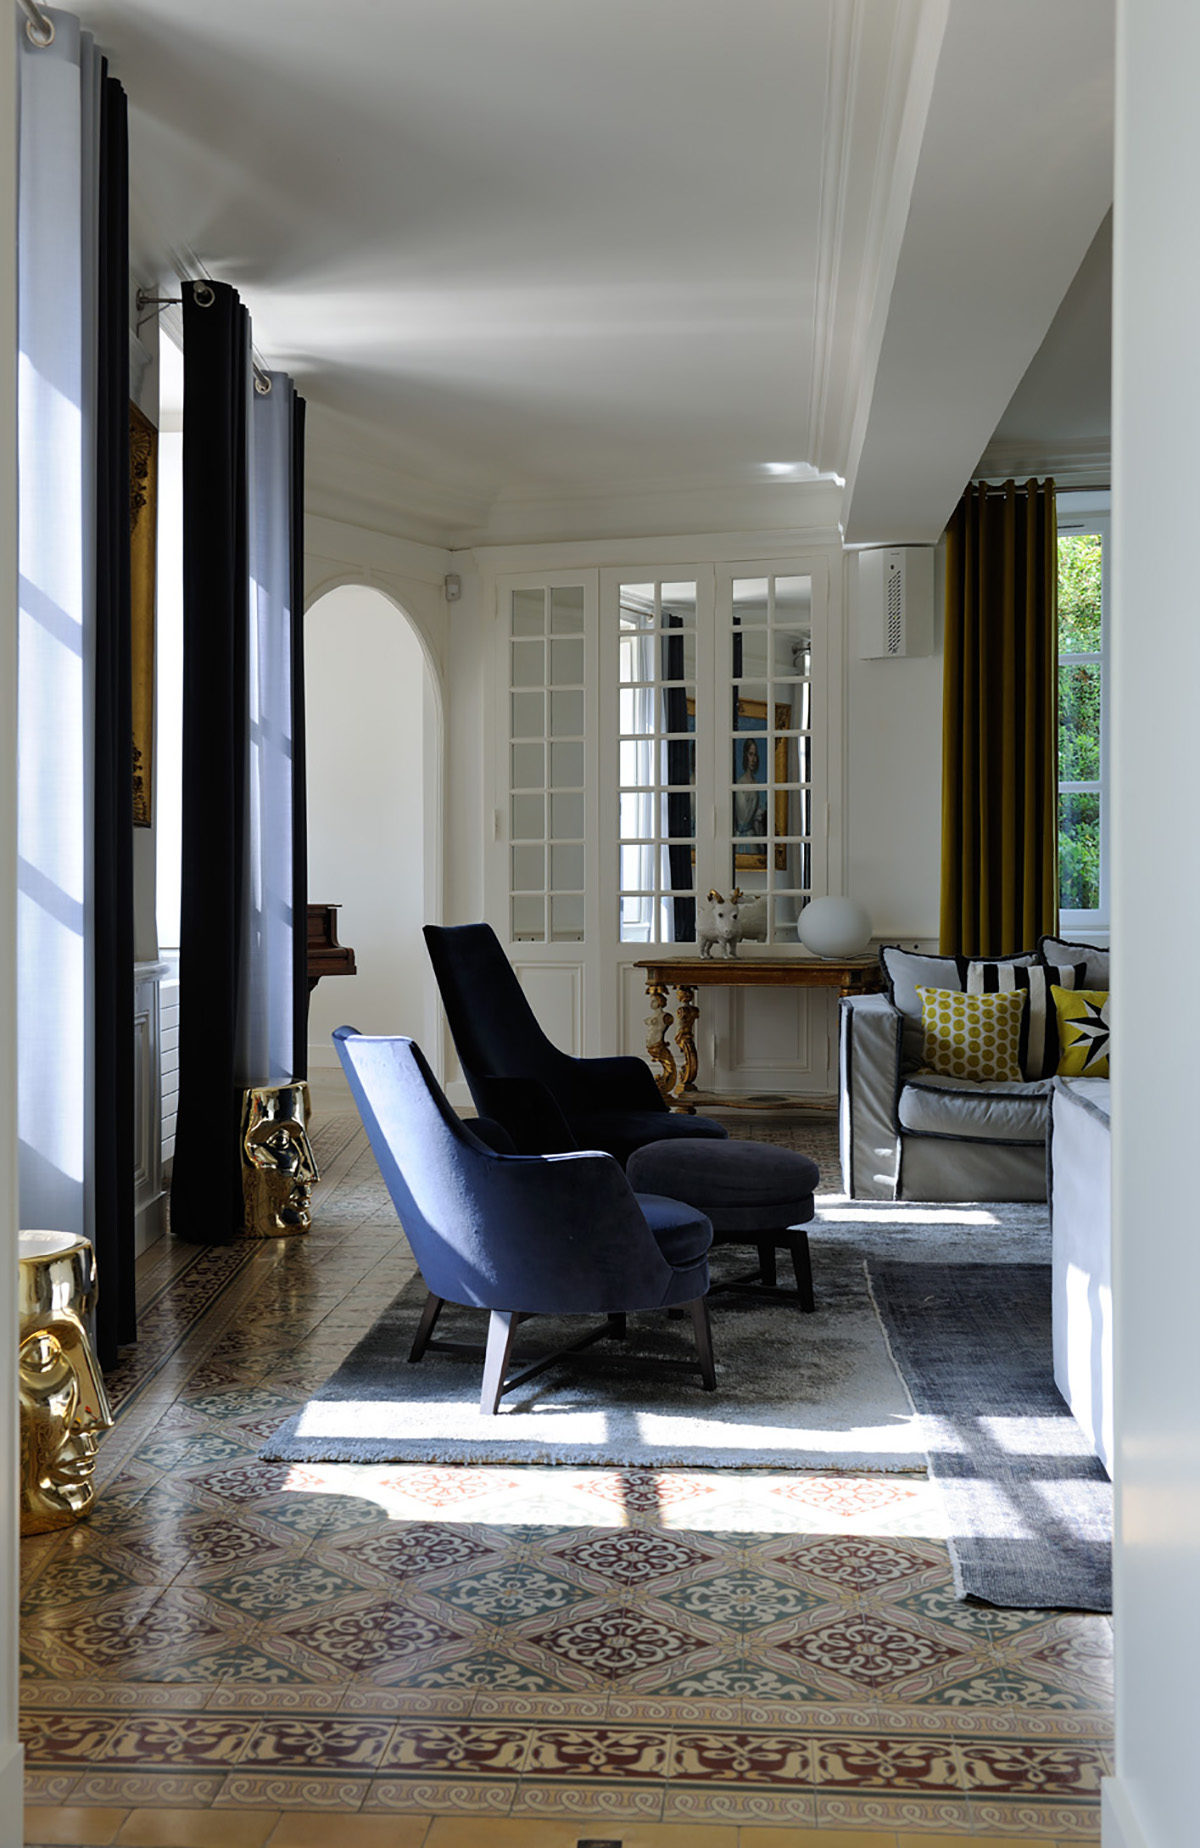 Réalisation résidentiel Claude Cartier décoration architecte d'intérieur à Lyon.